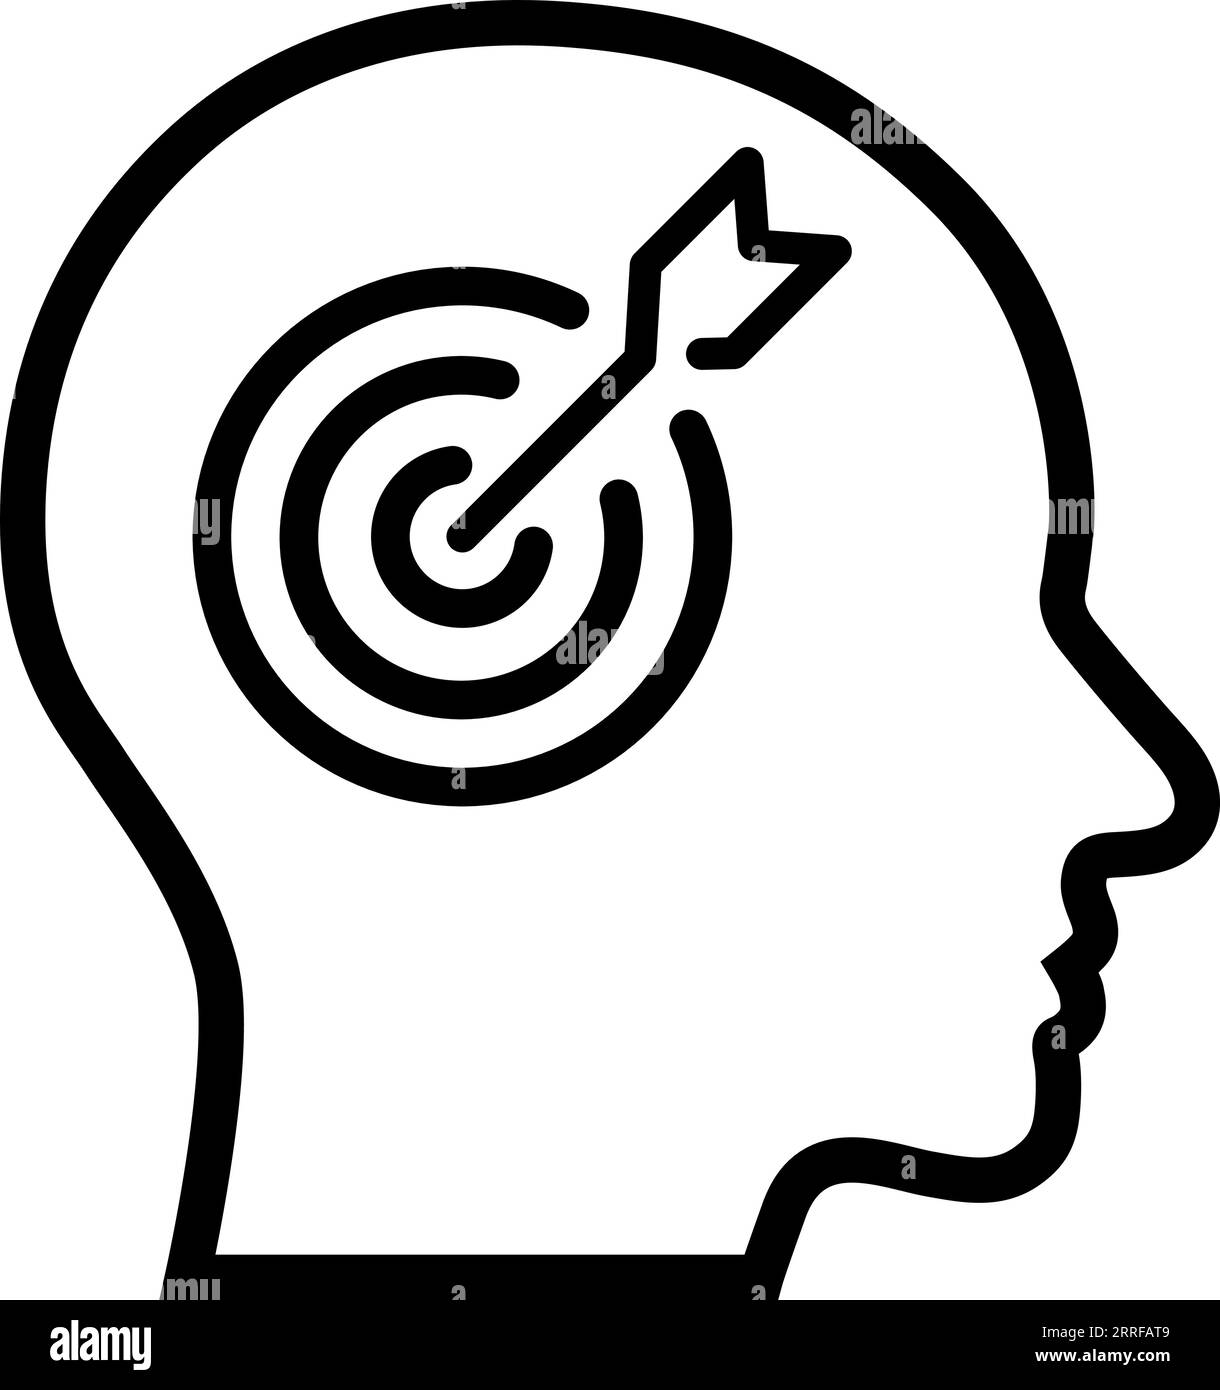 Strichsymbol des Dartziels im menschlichen Kopf als Konzept von Fokus, Ziel oder Wahrnehmung Stock Vektor